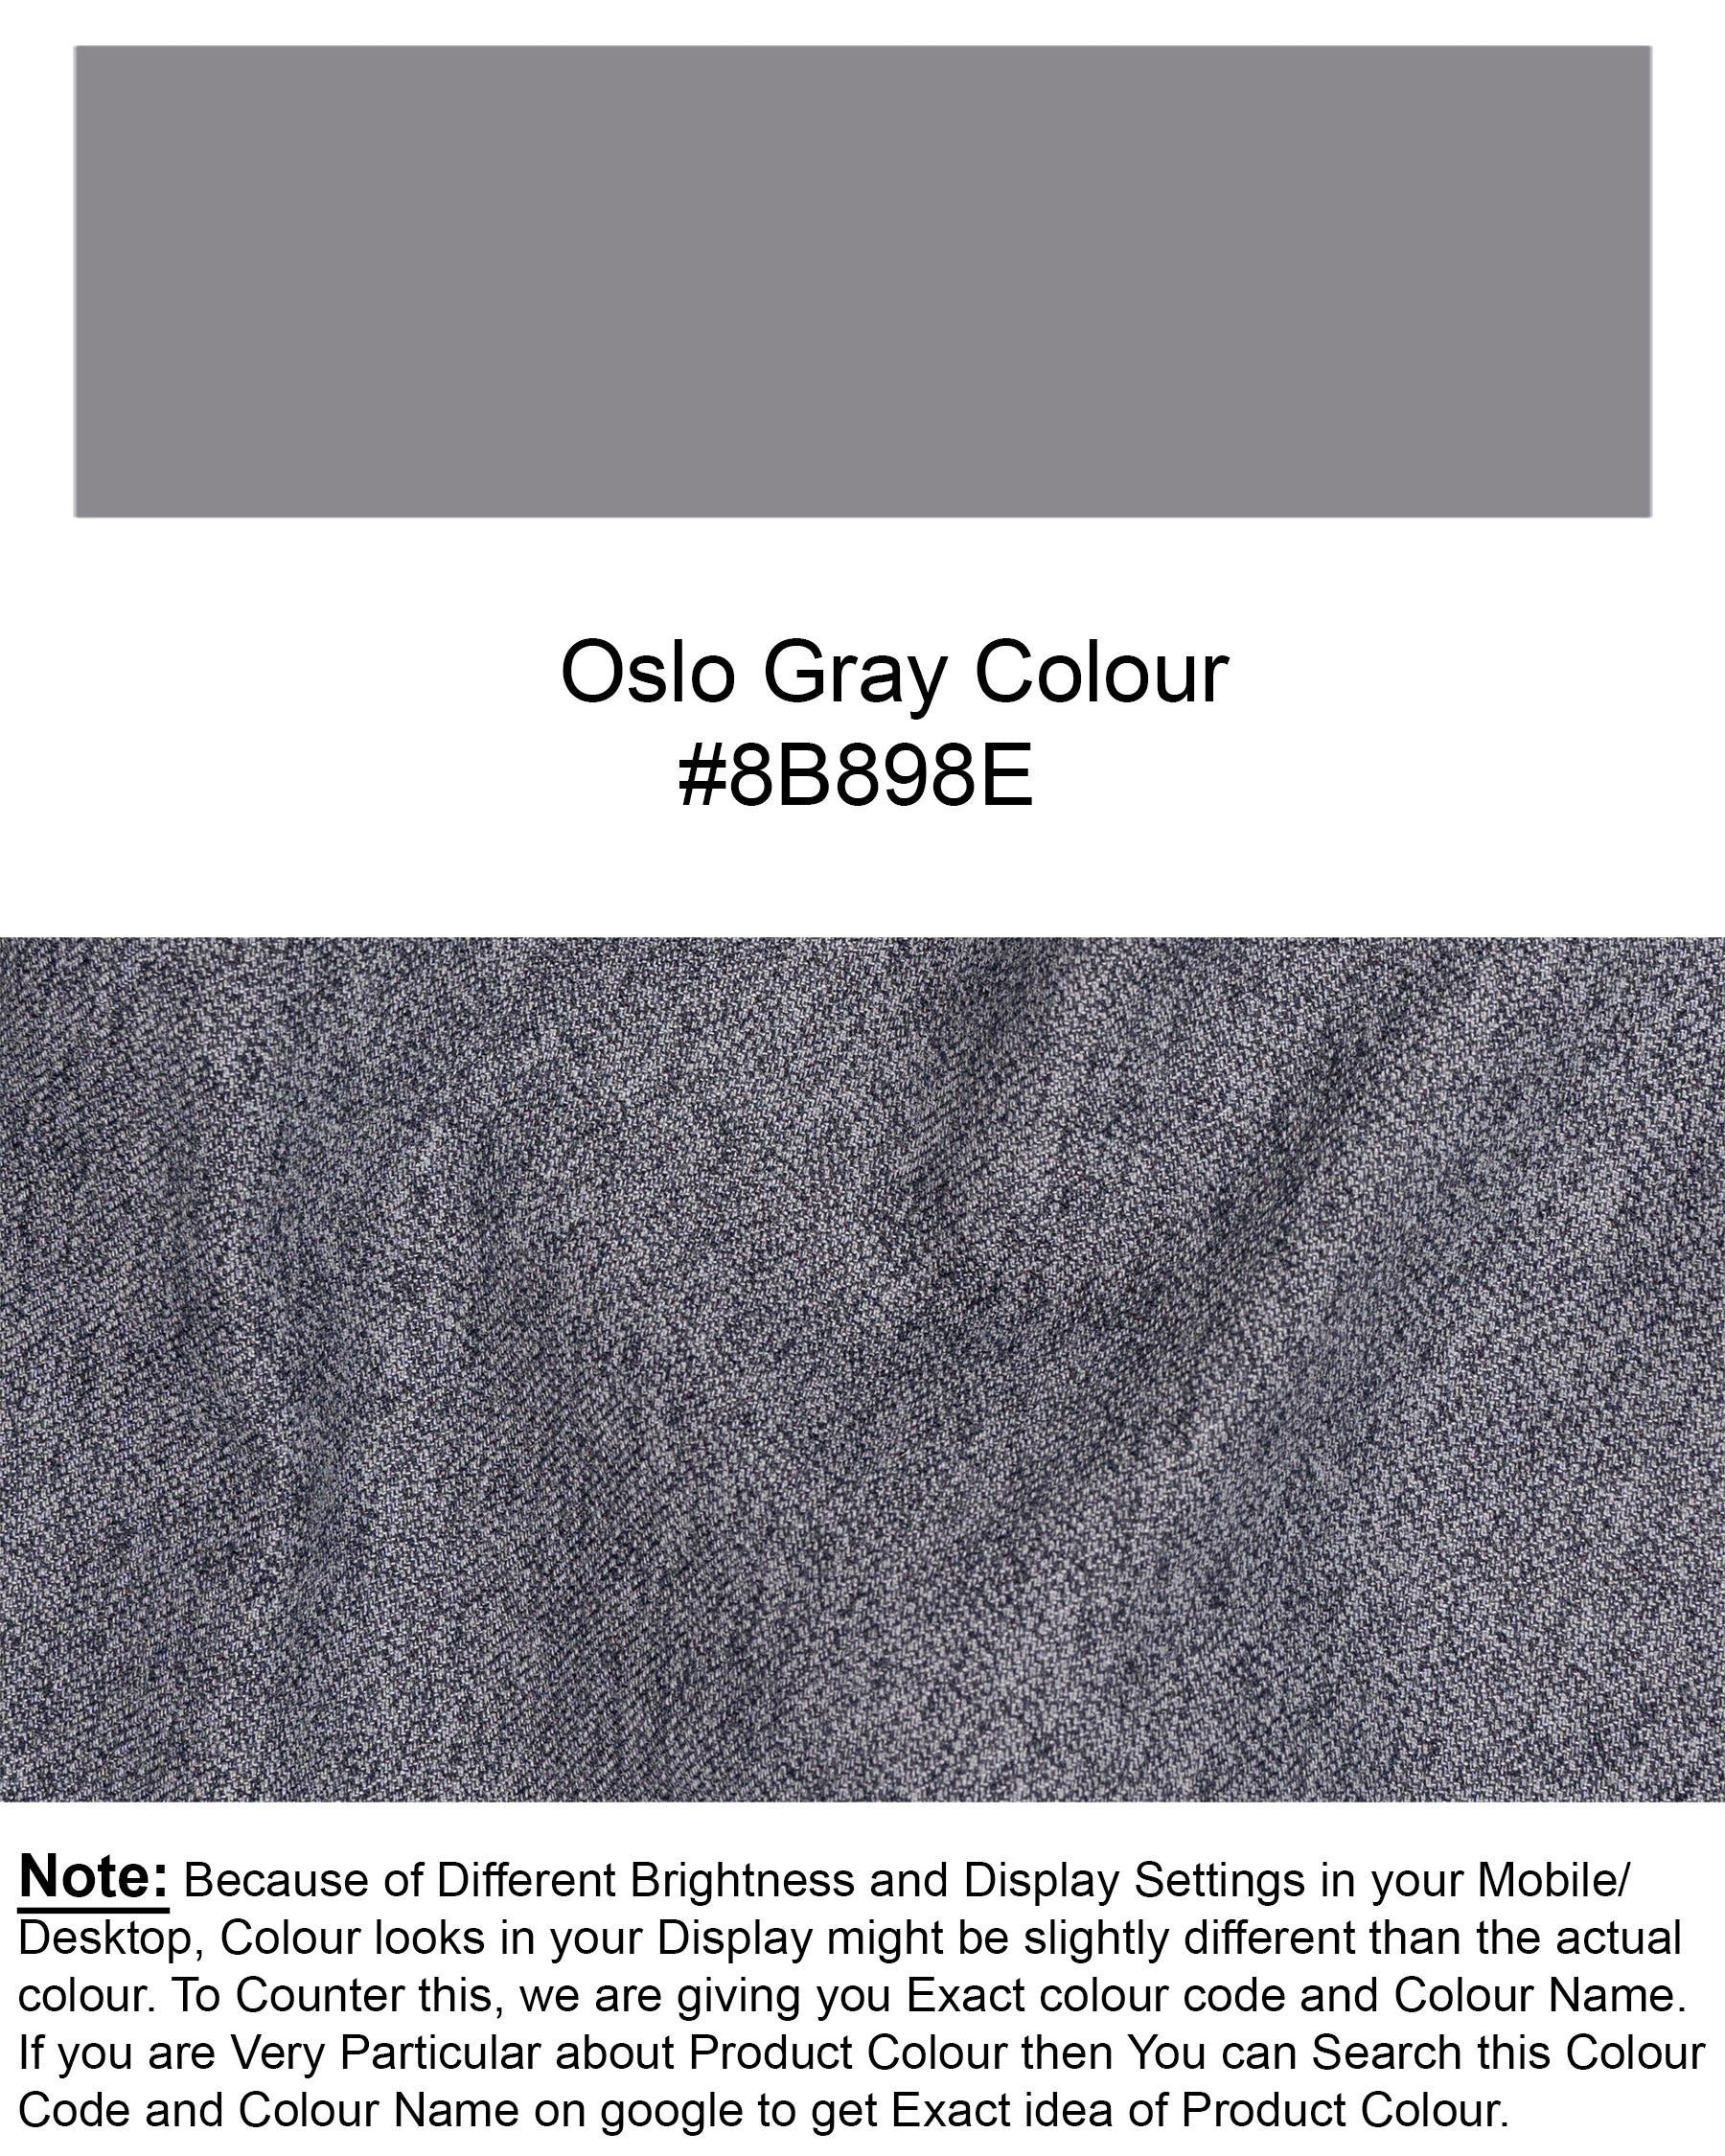 Oslo Gray Double Breasted Premium Cotton Sports Blazer BL1601-DB-PP-36, BL1601-DB-PP-38, BL1601-DB-PP-40, BL1601-DB-PP-42, BL1601-DB-PP-44, BL1601-DB-PP-46, BL1601-DB-PP-48, BL1601-DB-PP-50, BL1601-DB-PP-52, BL1601-DB-PP-54, BL1601-DB-PP-56, BL1601-DB-PP-58, BL1601-DB-PP-60